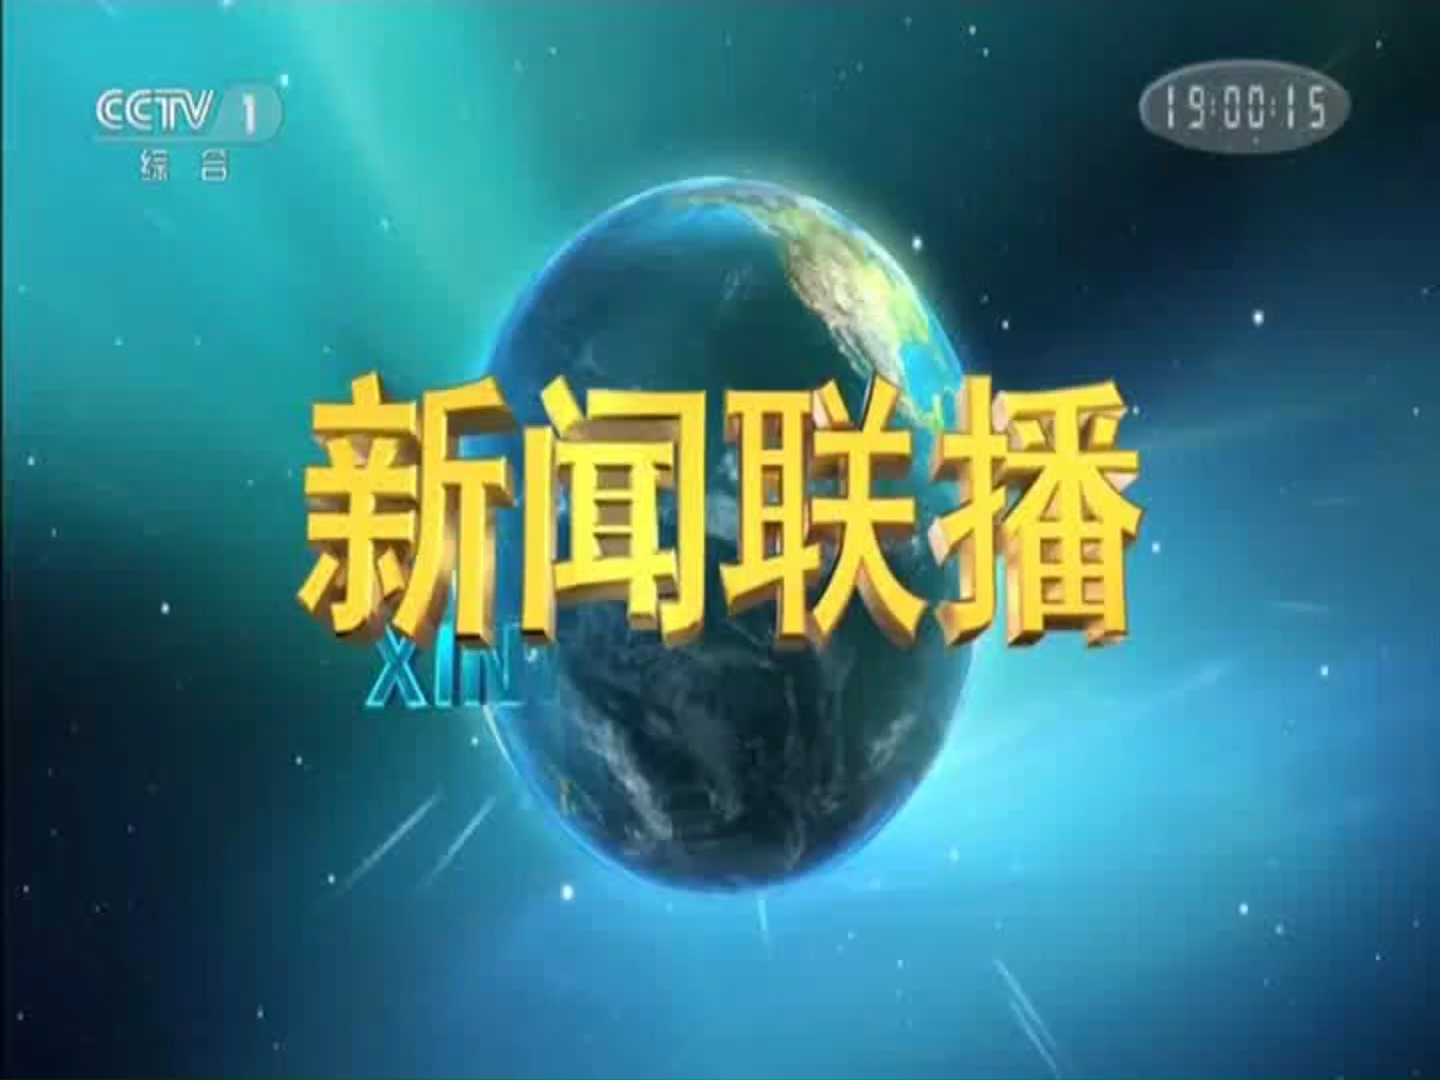 中央电视台·新闻联播:坚持绿色发展 建设美丽中国